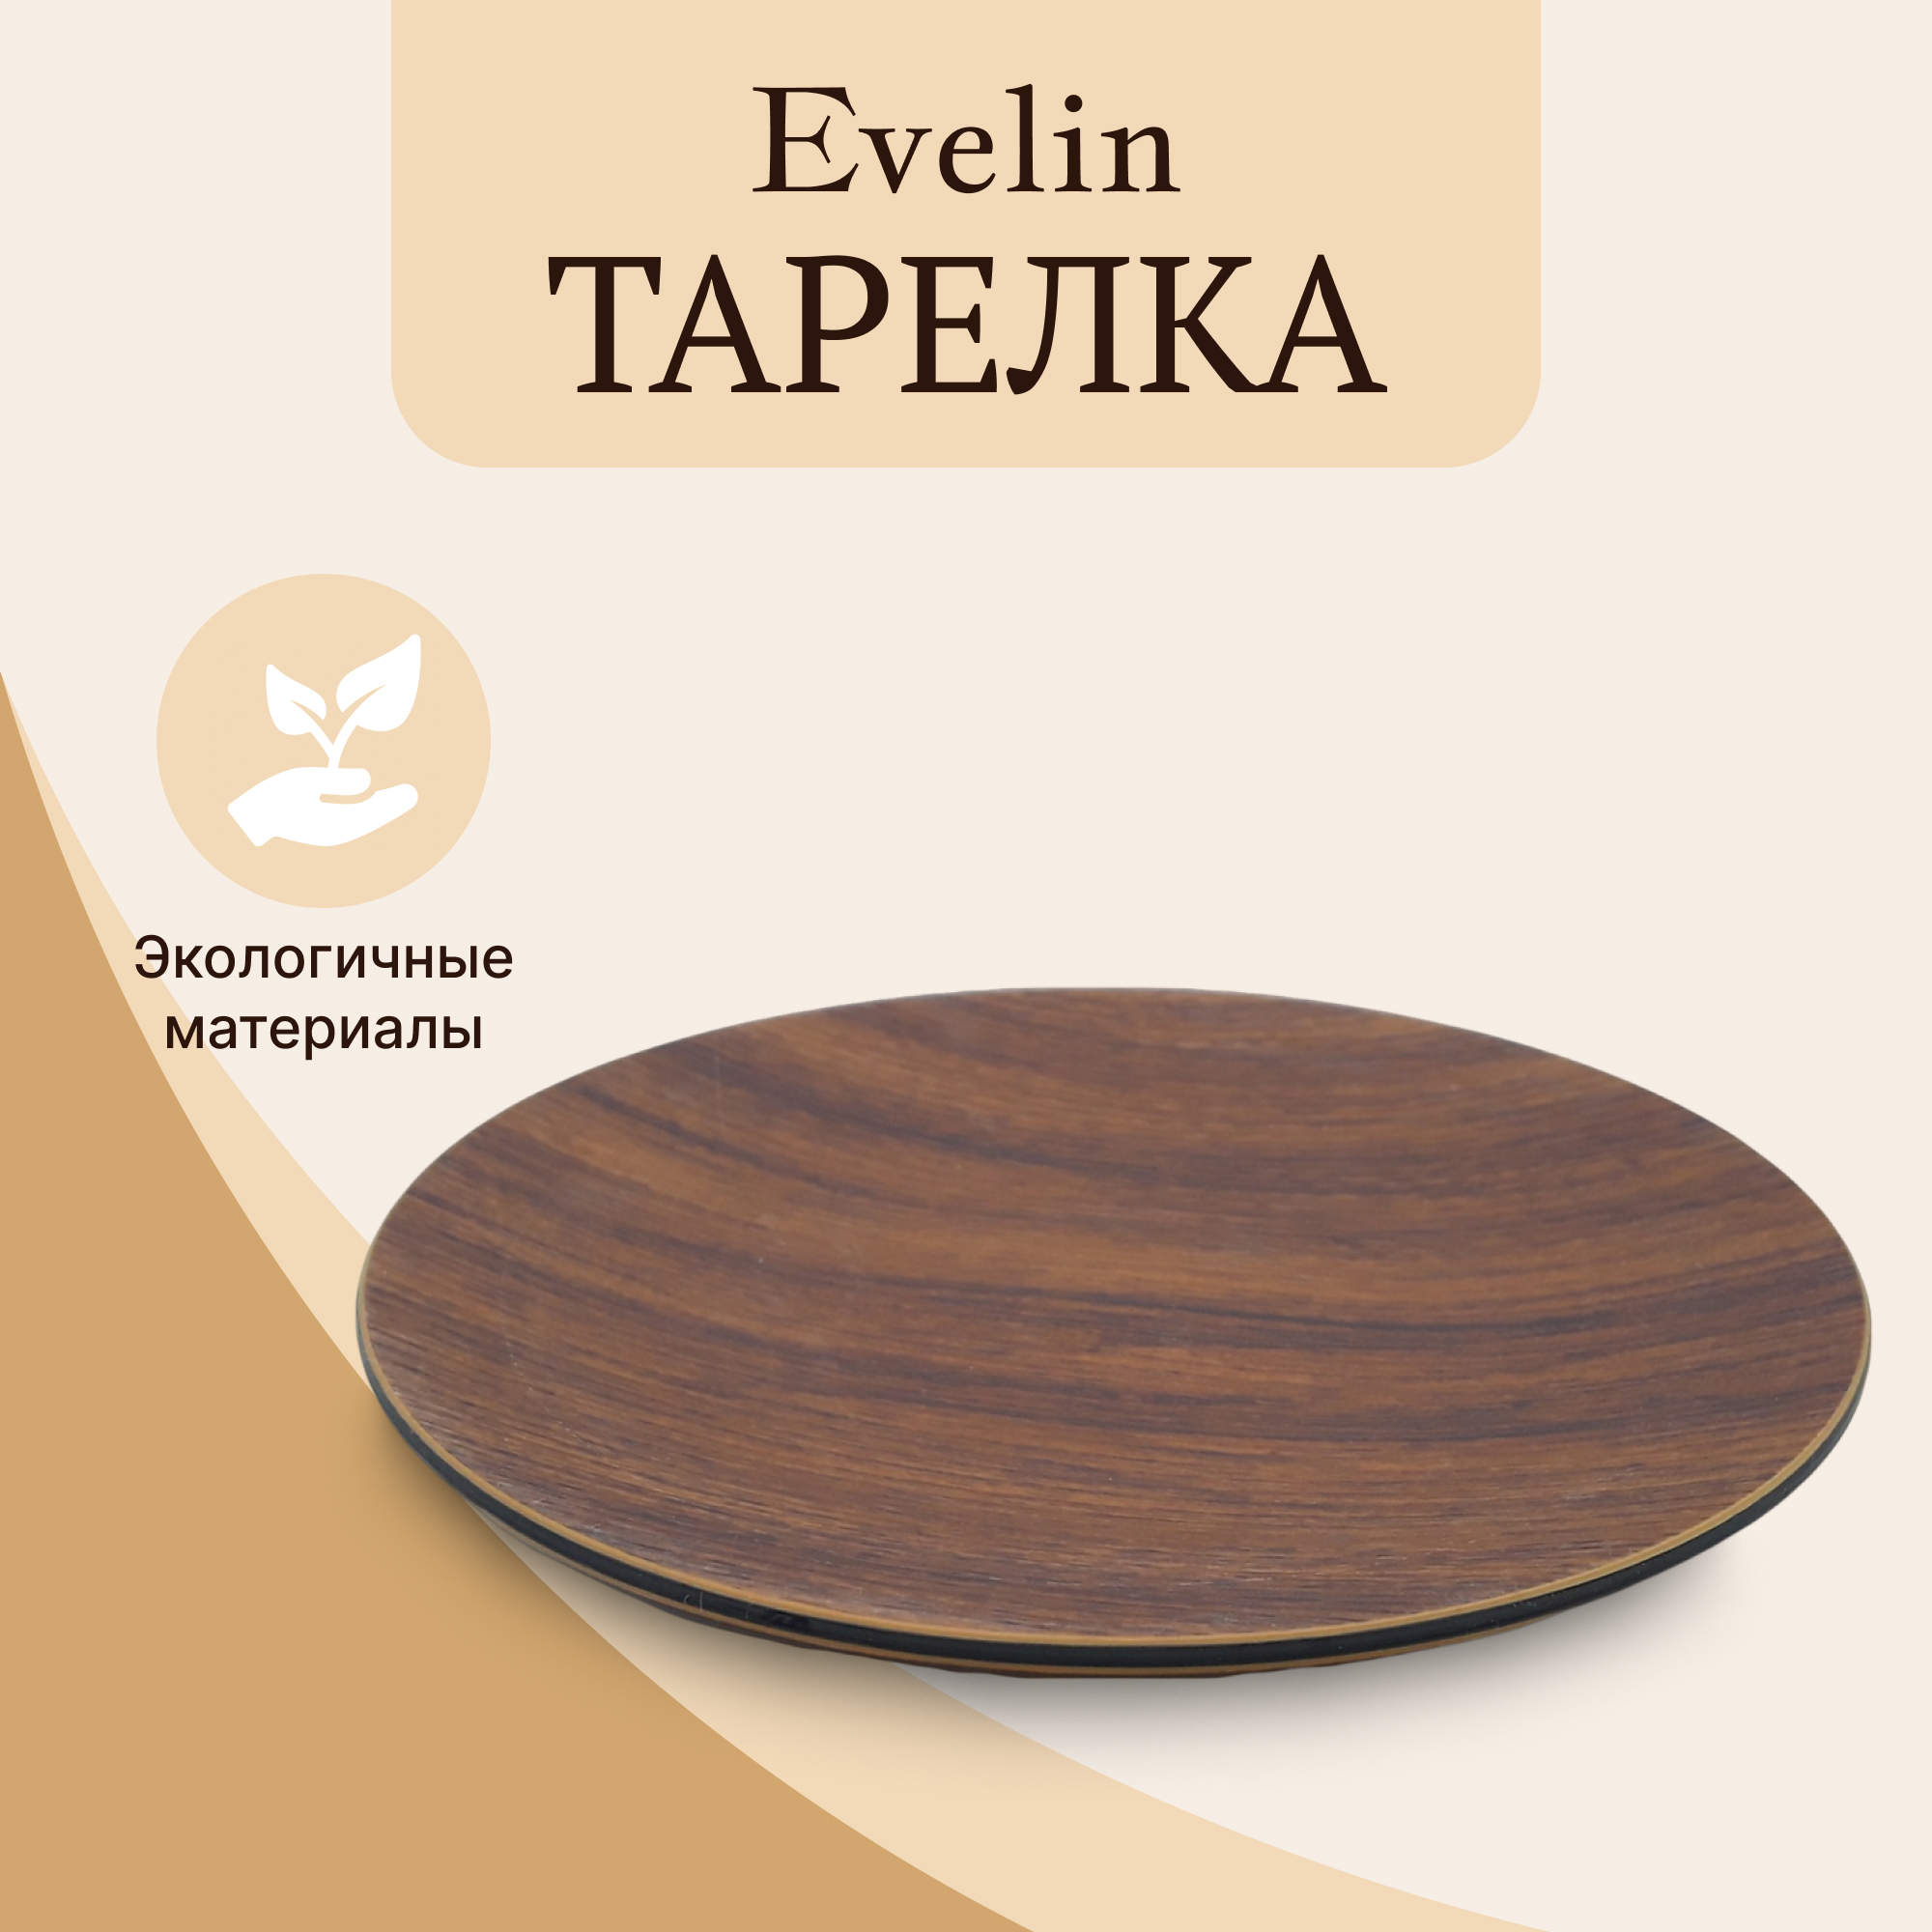 Тарелка Evelin круглая 31 см, цвет коричневый - фото 2